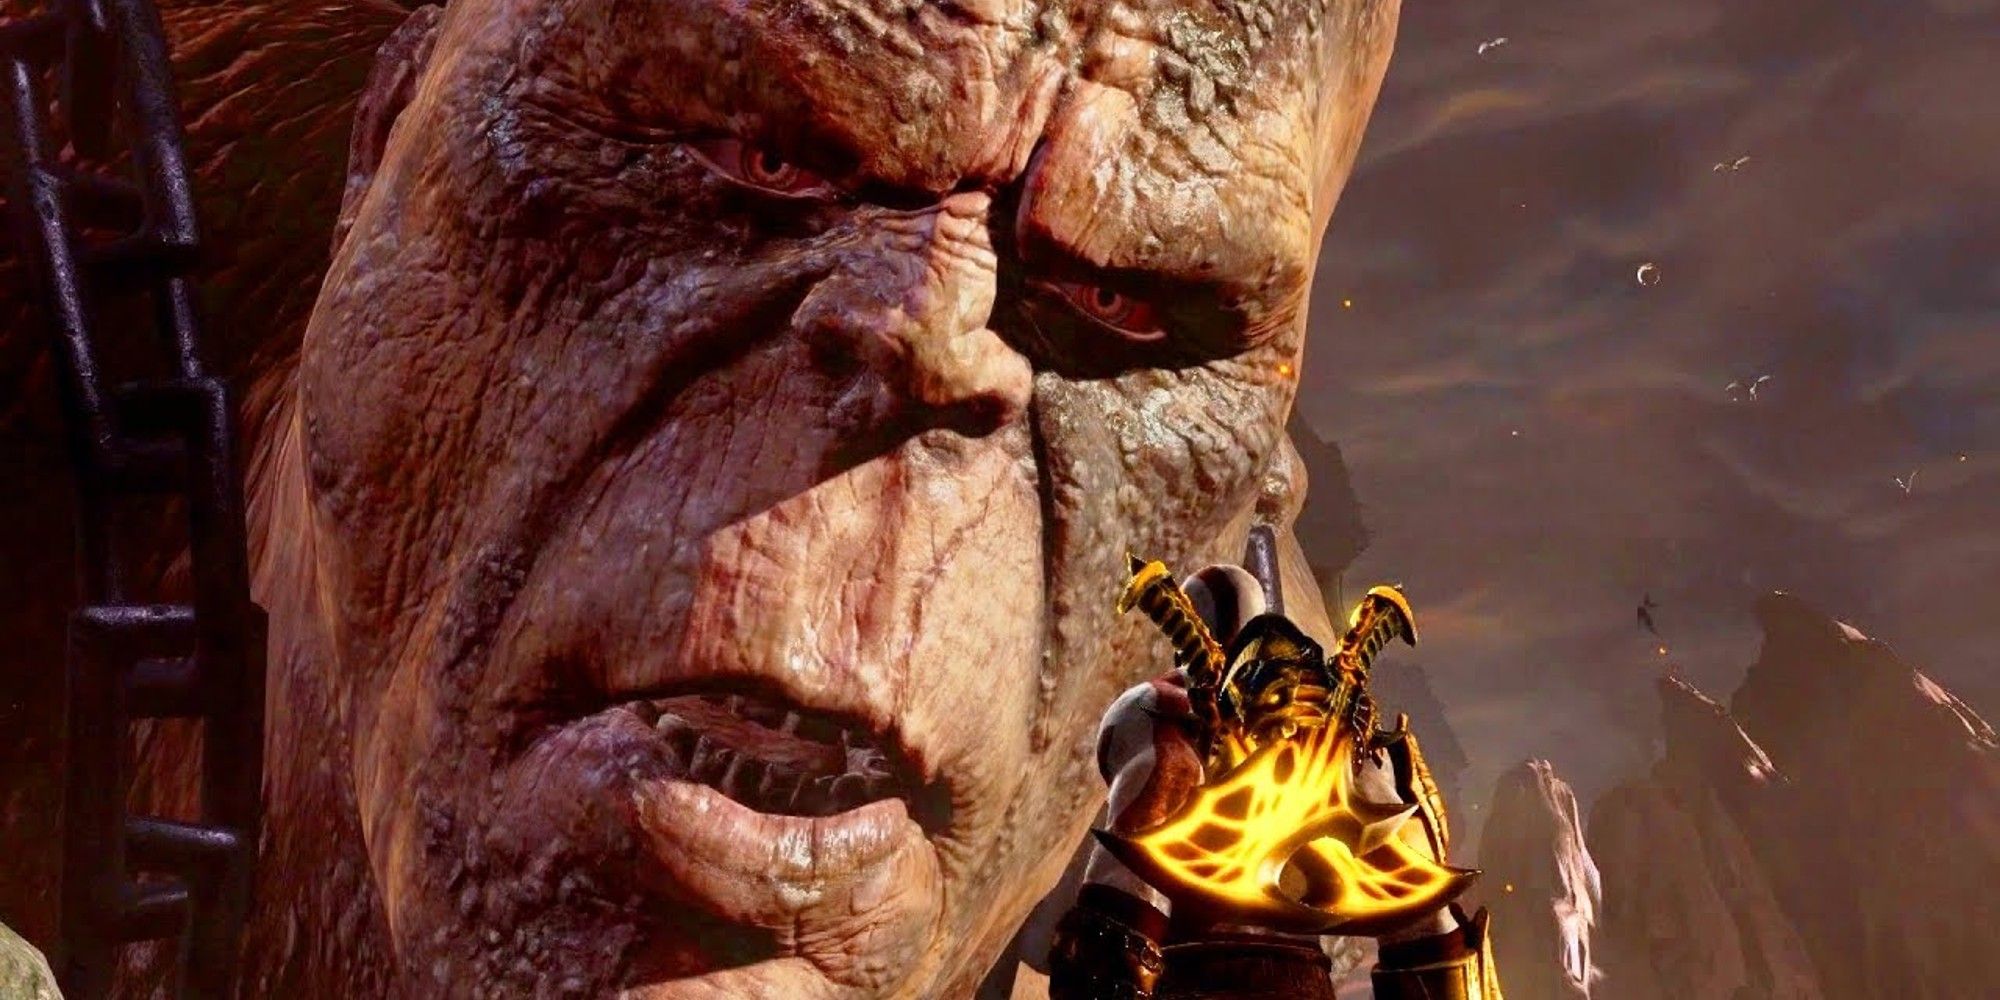 Kronos God of War 3, staring at Kratos